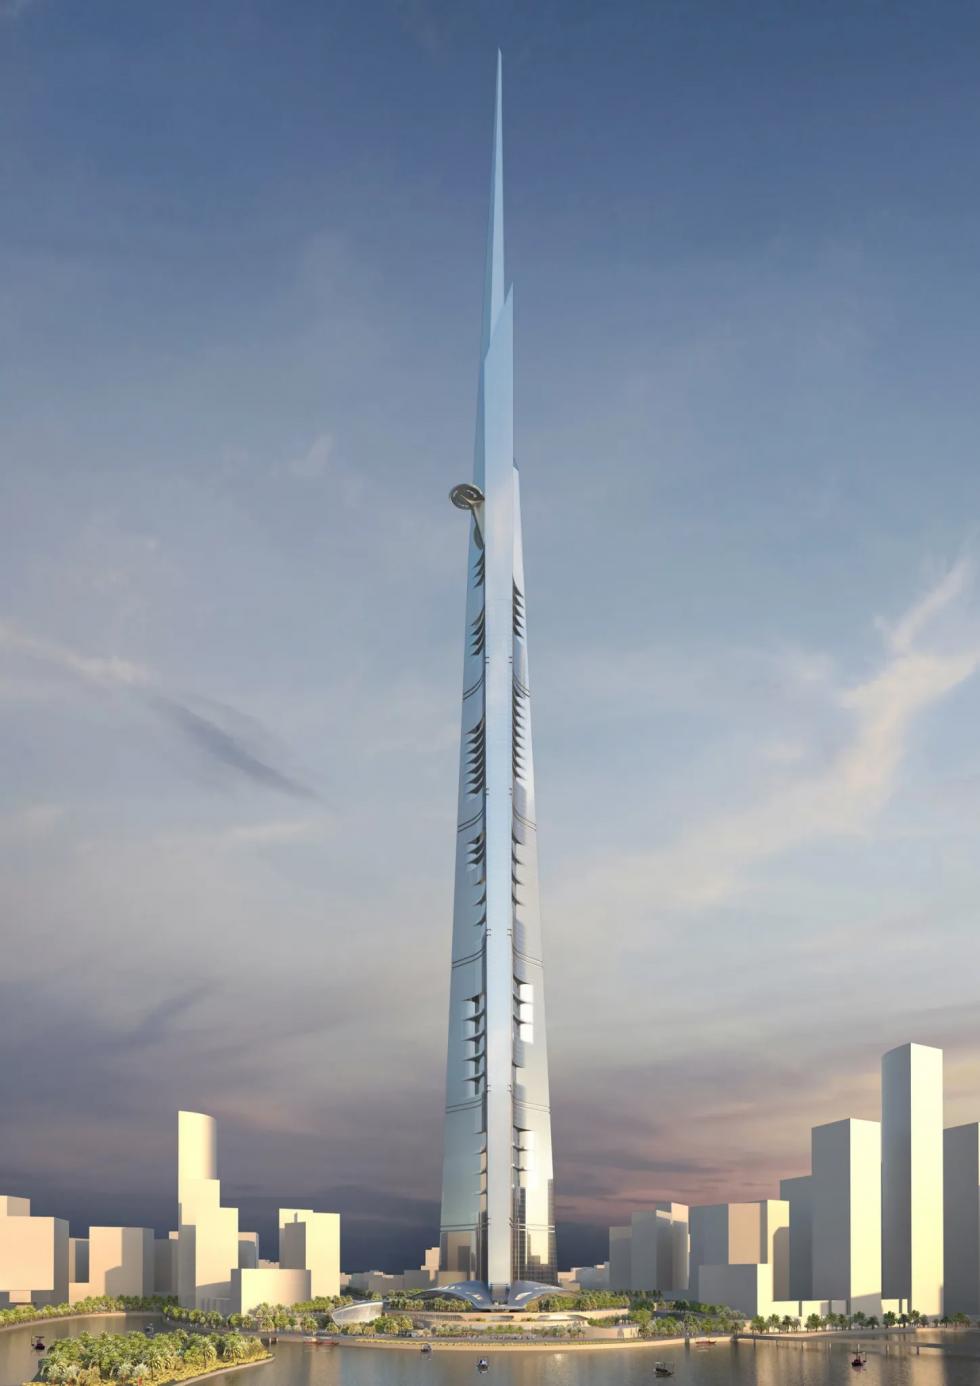 Újraindul a világ legmagasabb felhőkarcolójának építése Szaúd-Arábiában